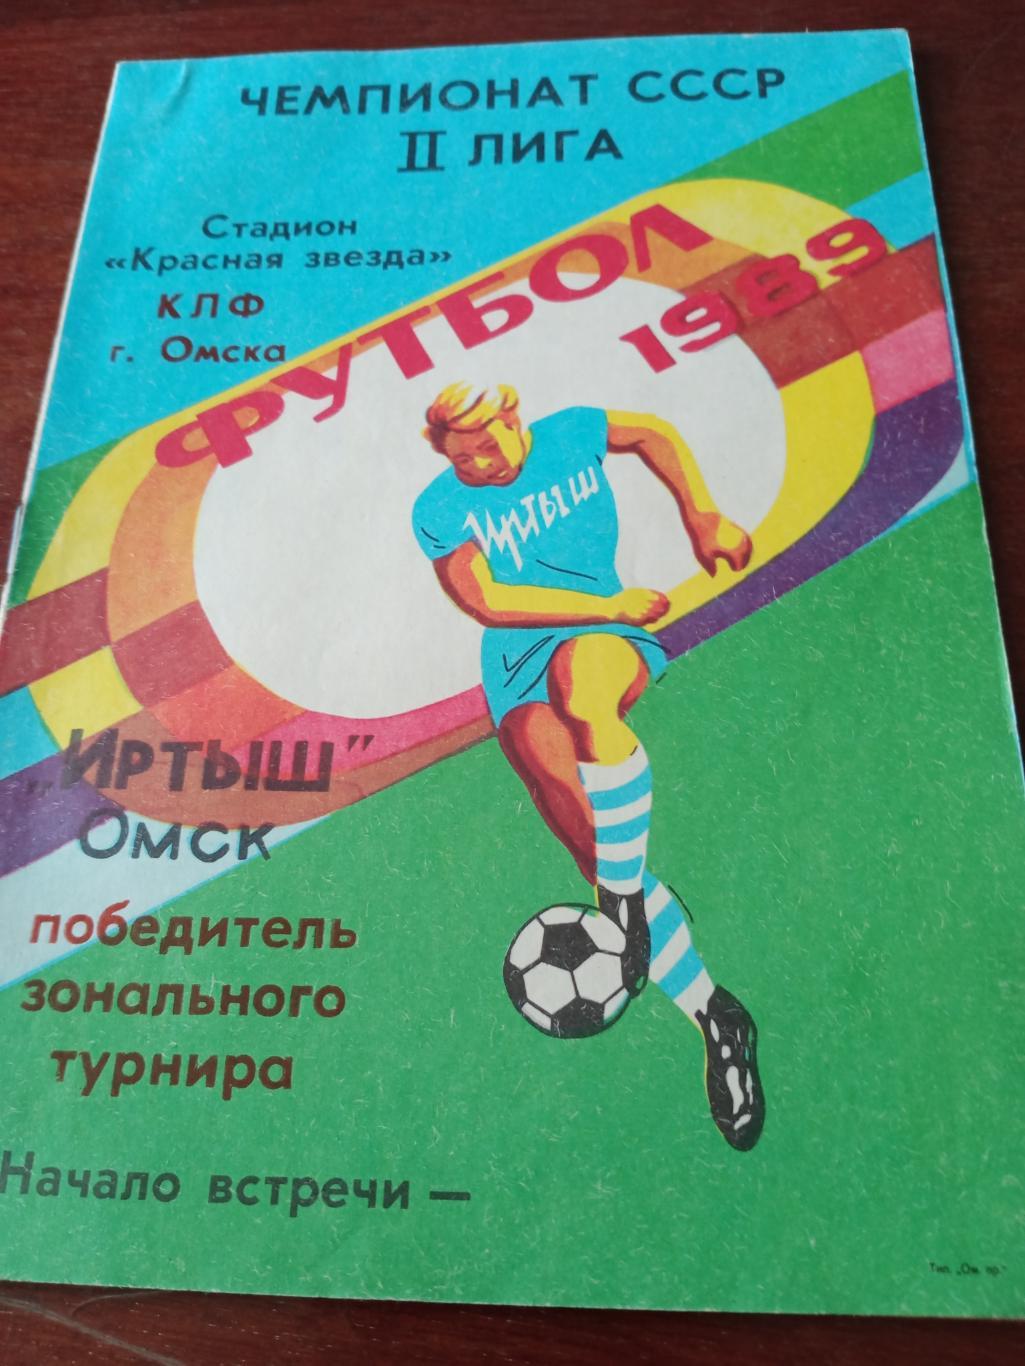 Футбол. Иртыш Омск - победитель зонального турнира. 1989 год